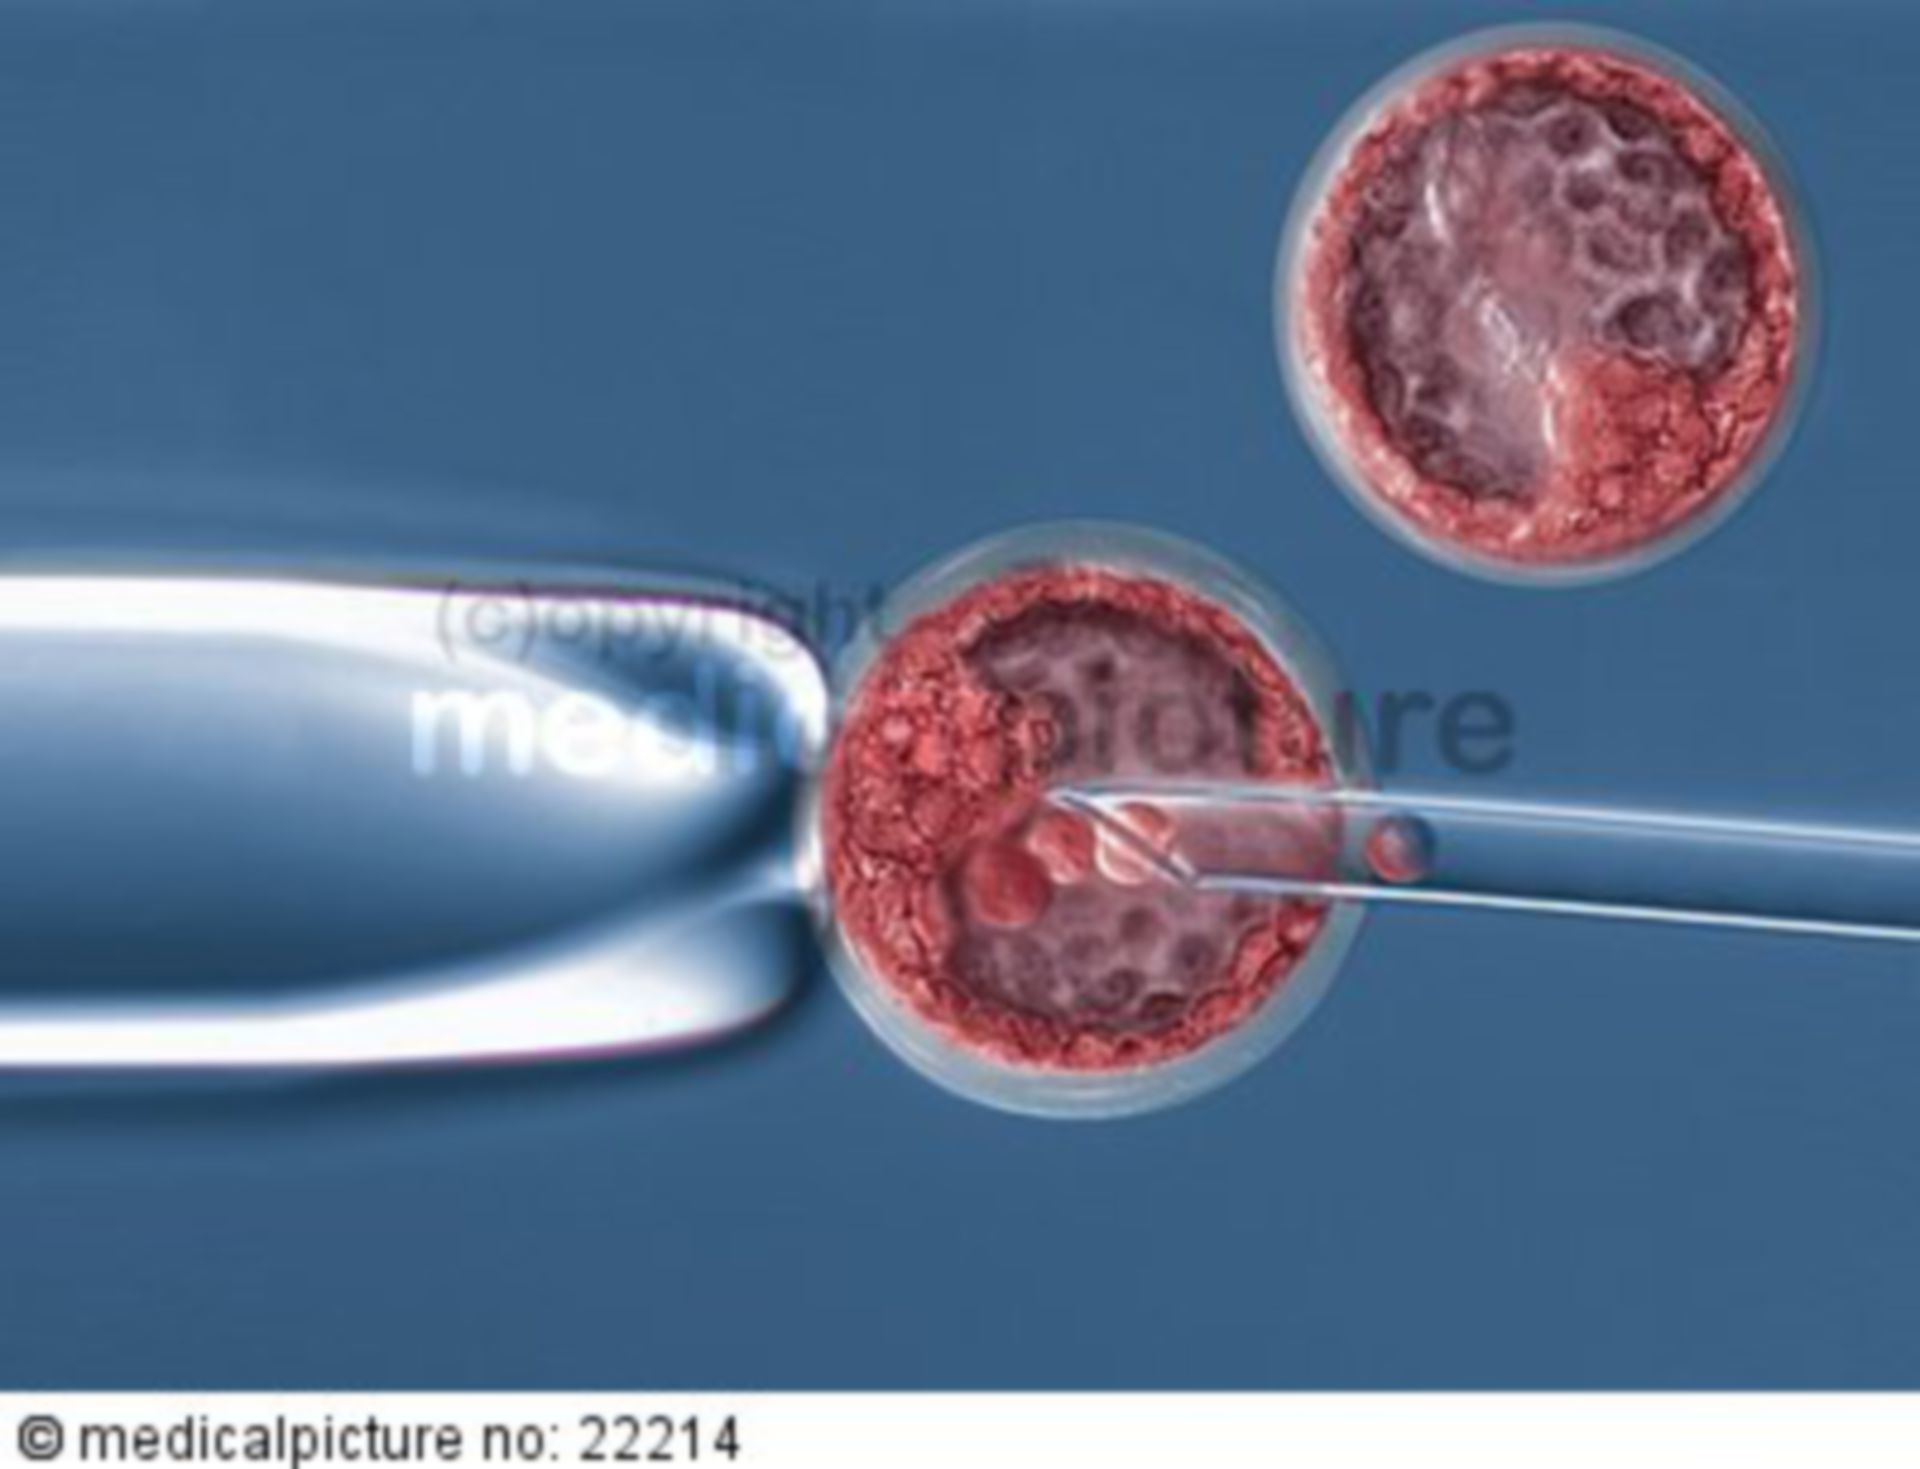 Entnahme von Stammzellen aus einer Blastozyste